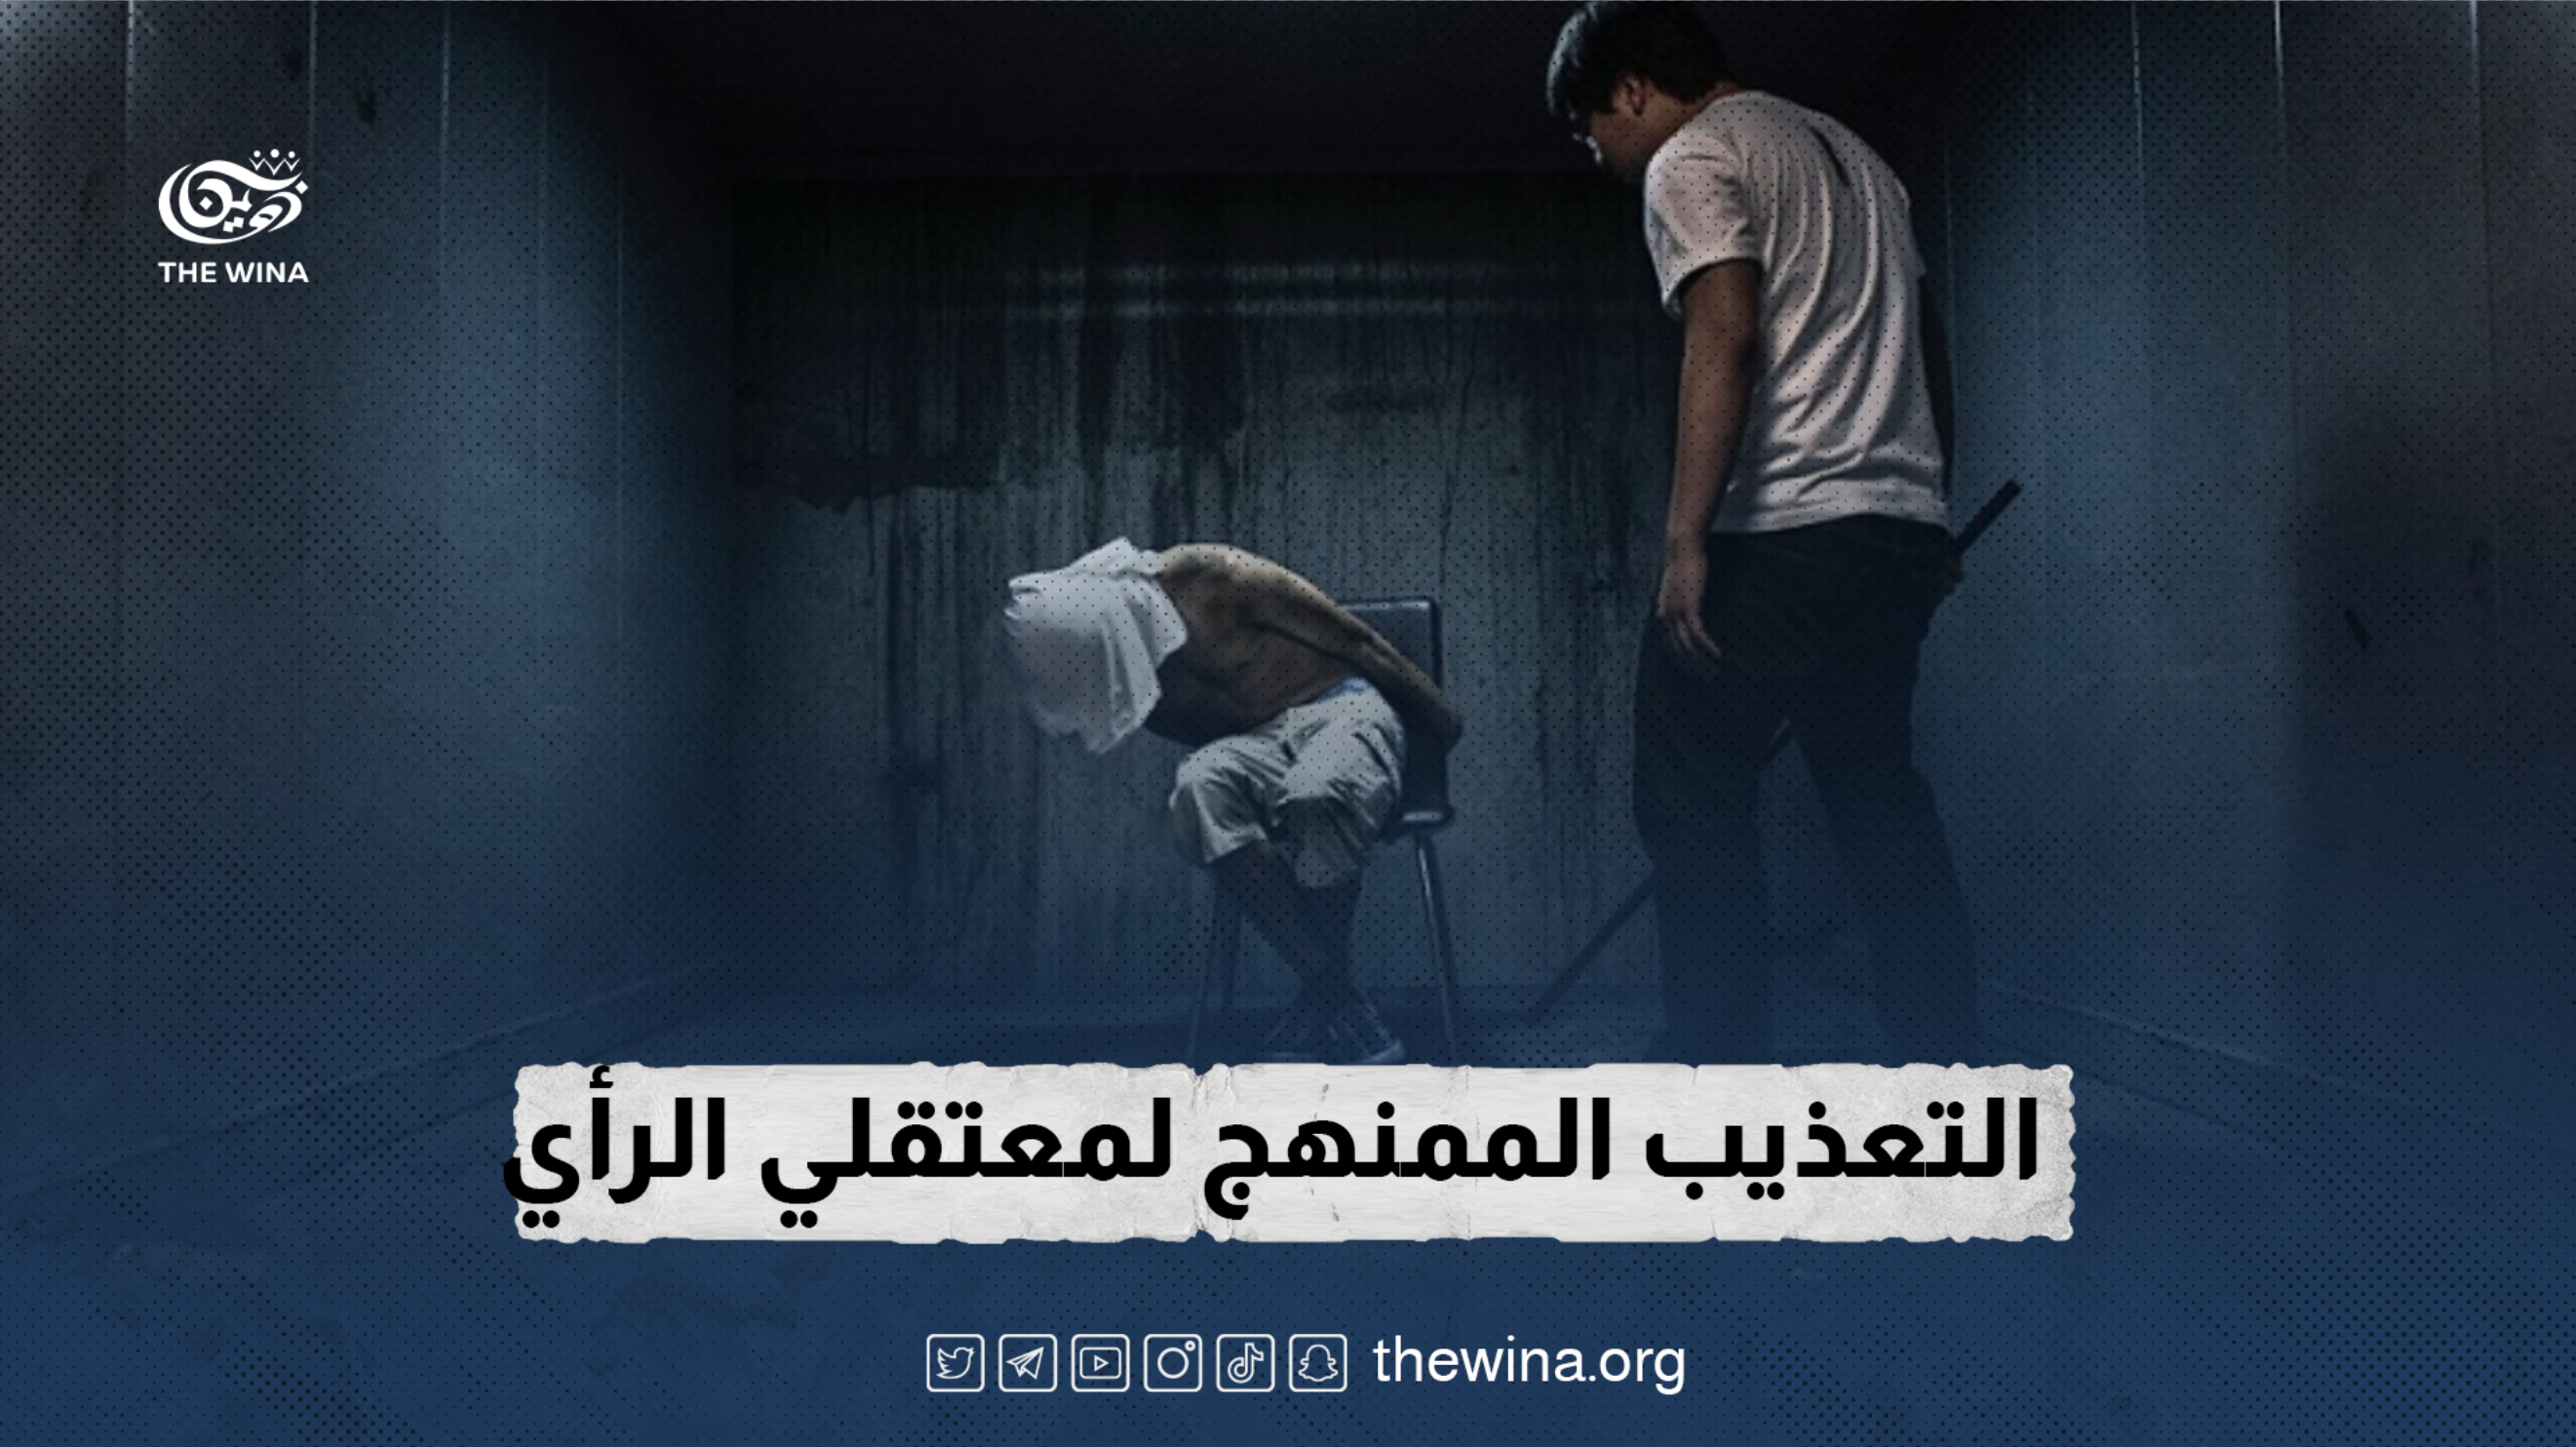 التعذيب الممنهج لمعتقلي الرأي في سجون السلطات السعودية